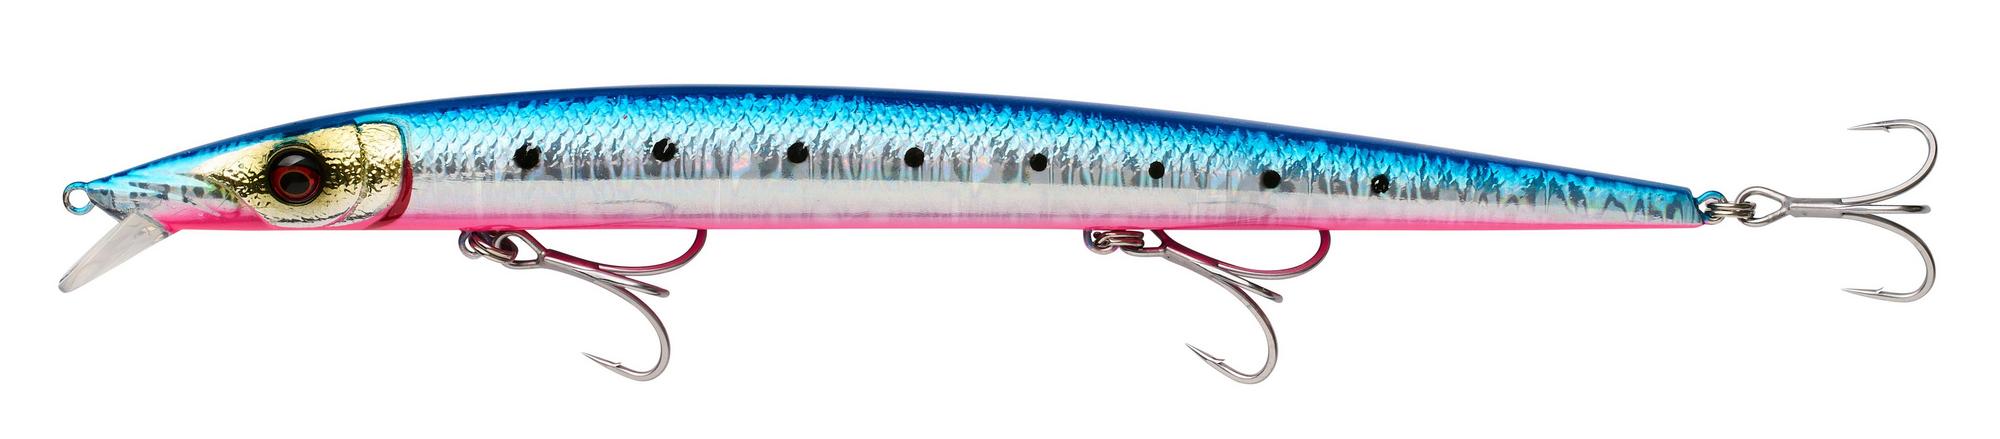 Savage Gear Barra Jerk sinkender Meeresköder 19cm (29g) - Pinkbelly Sardine